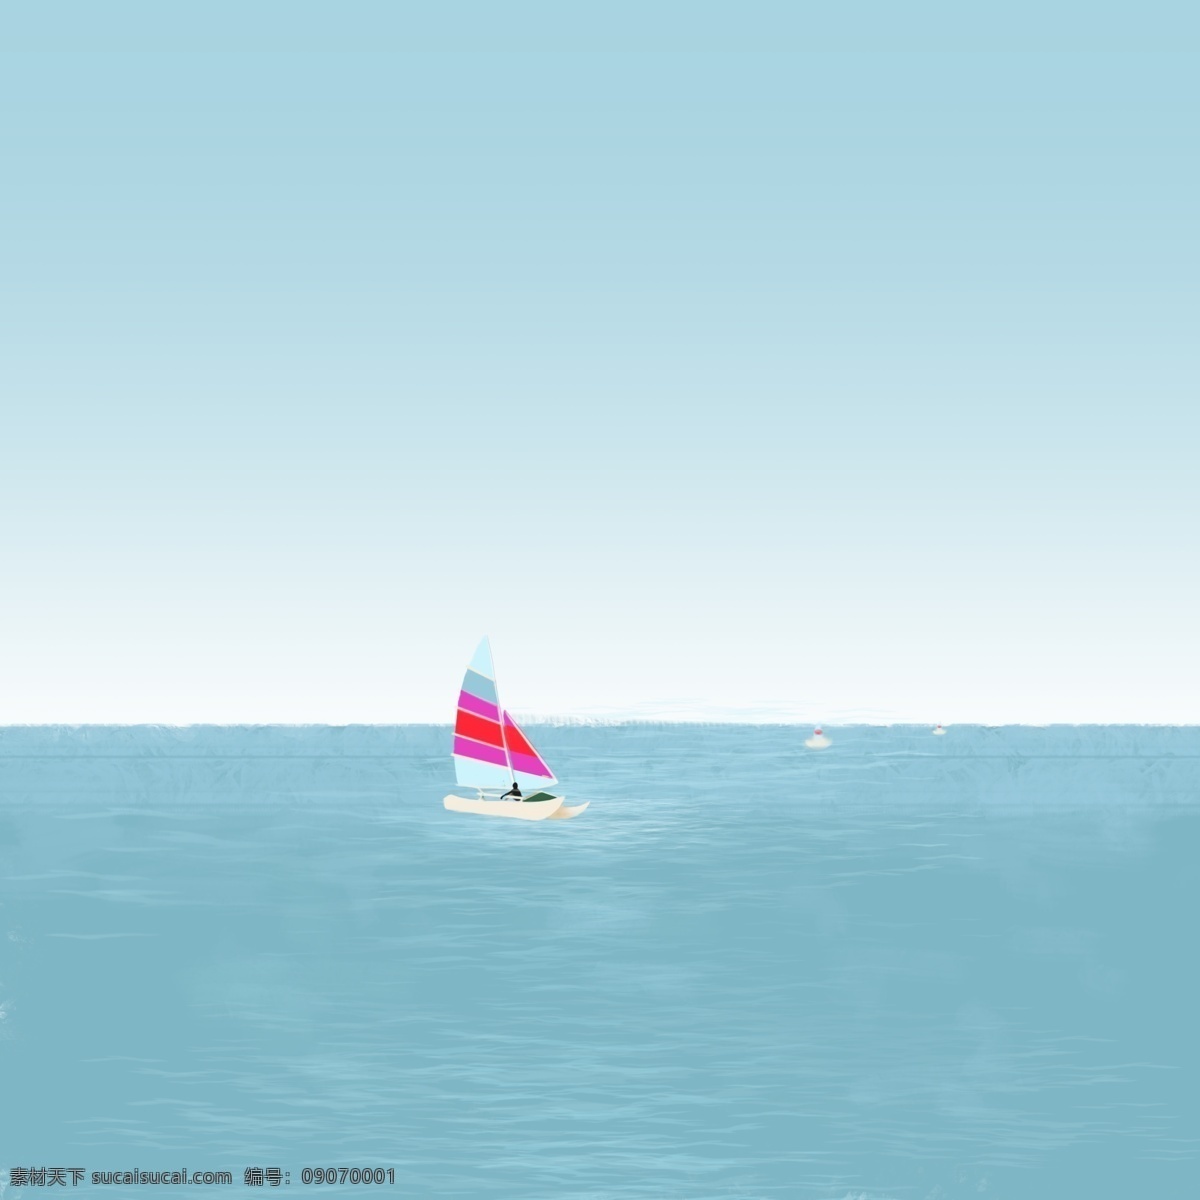 夏日 海边 帆船 冲浪 天空 海浪 海面 天蓝 划船